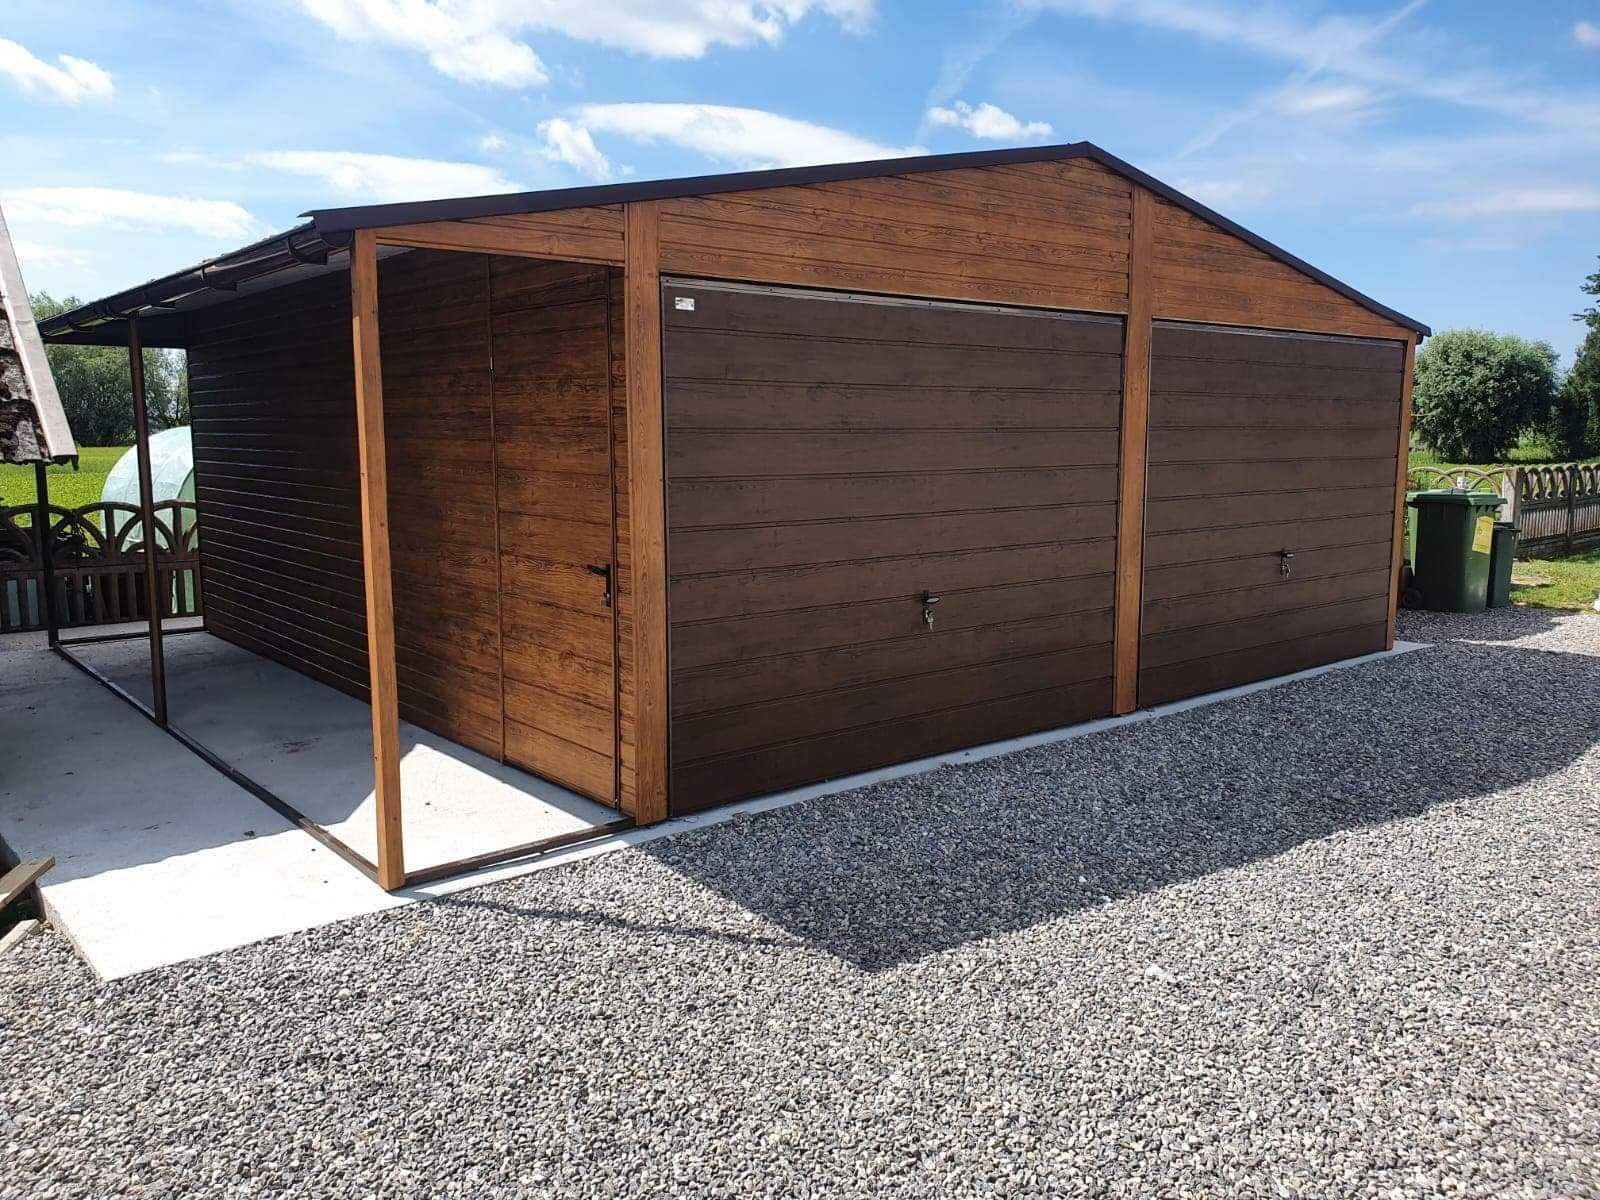 Garaż PREMIUM 6x5 + wiata, zadaszenie, domek, brama uchylna, automat